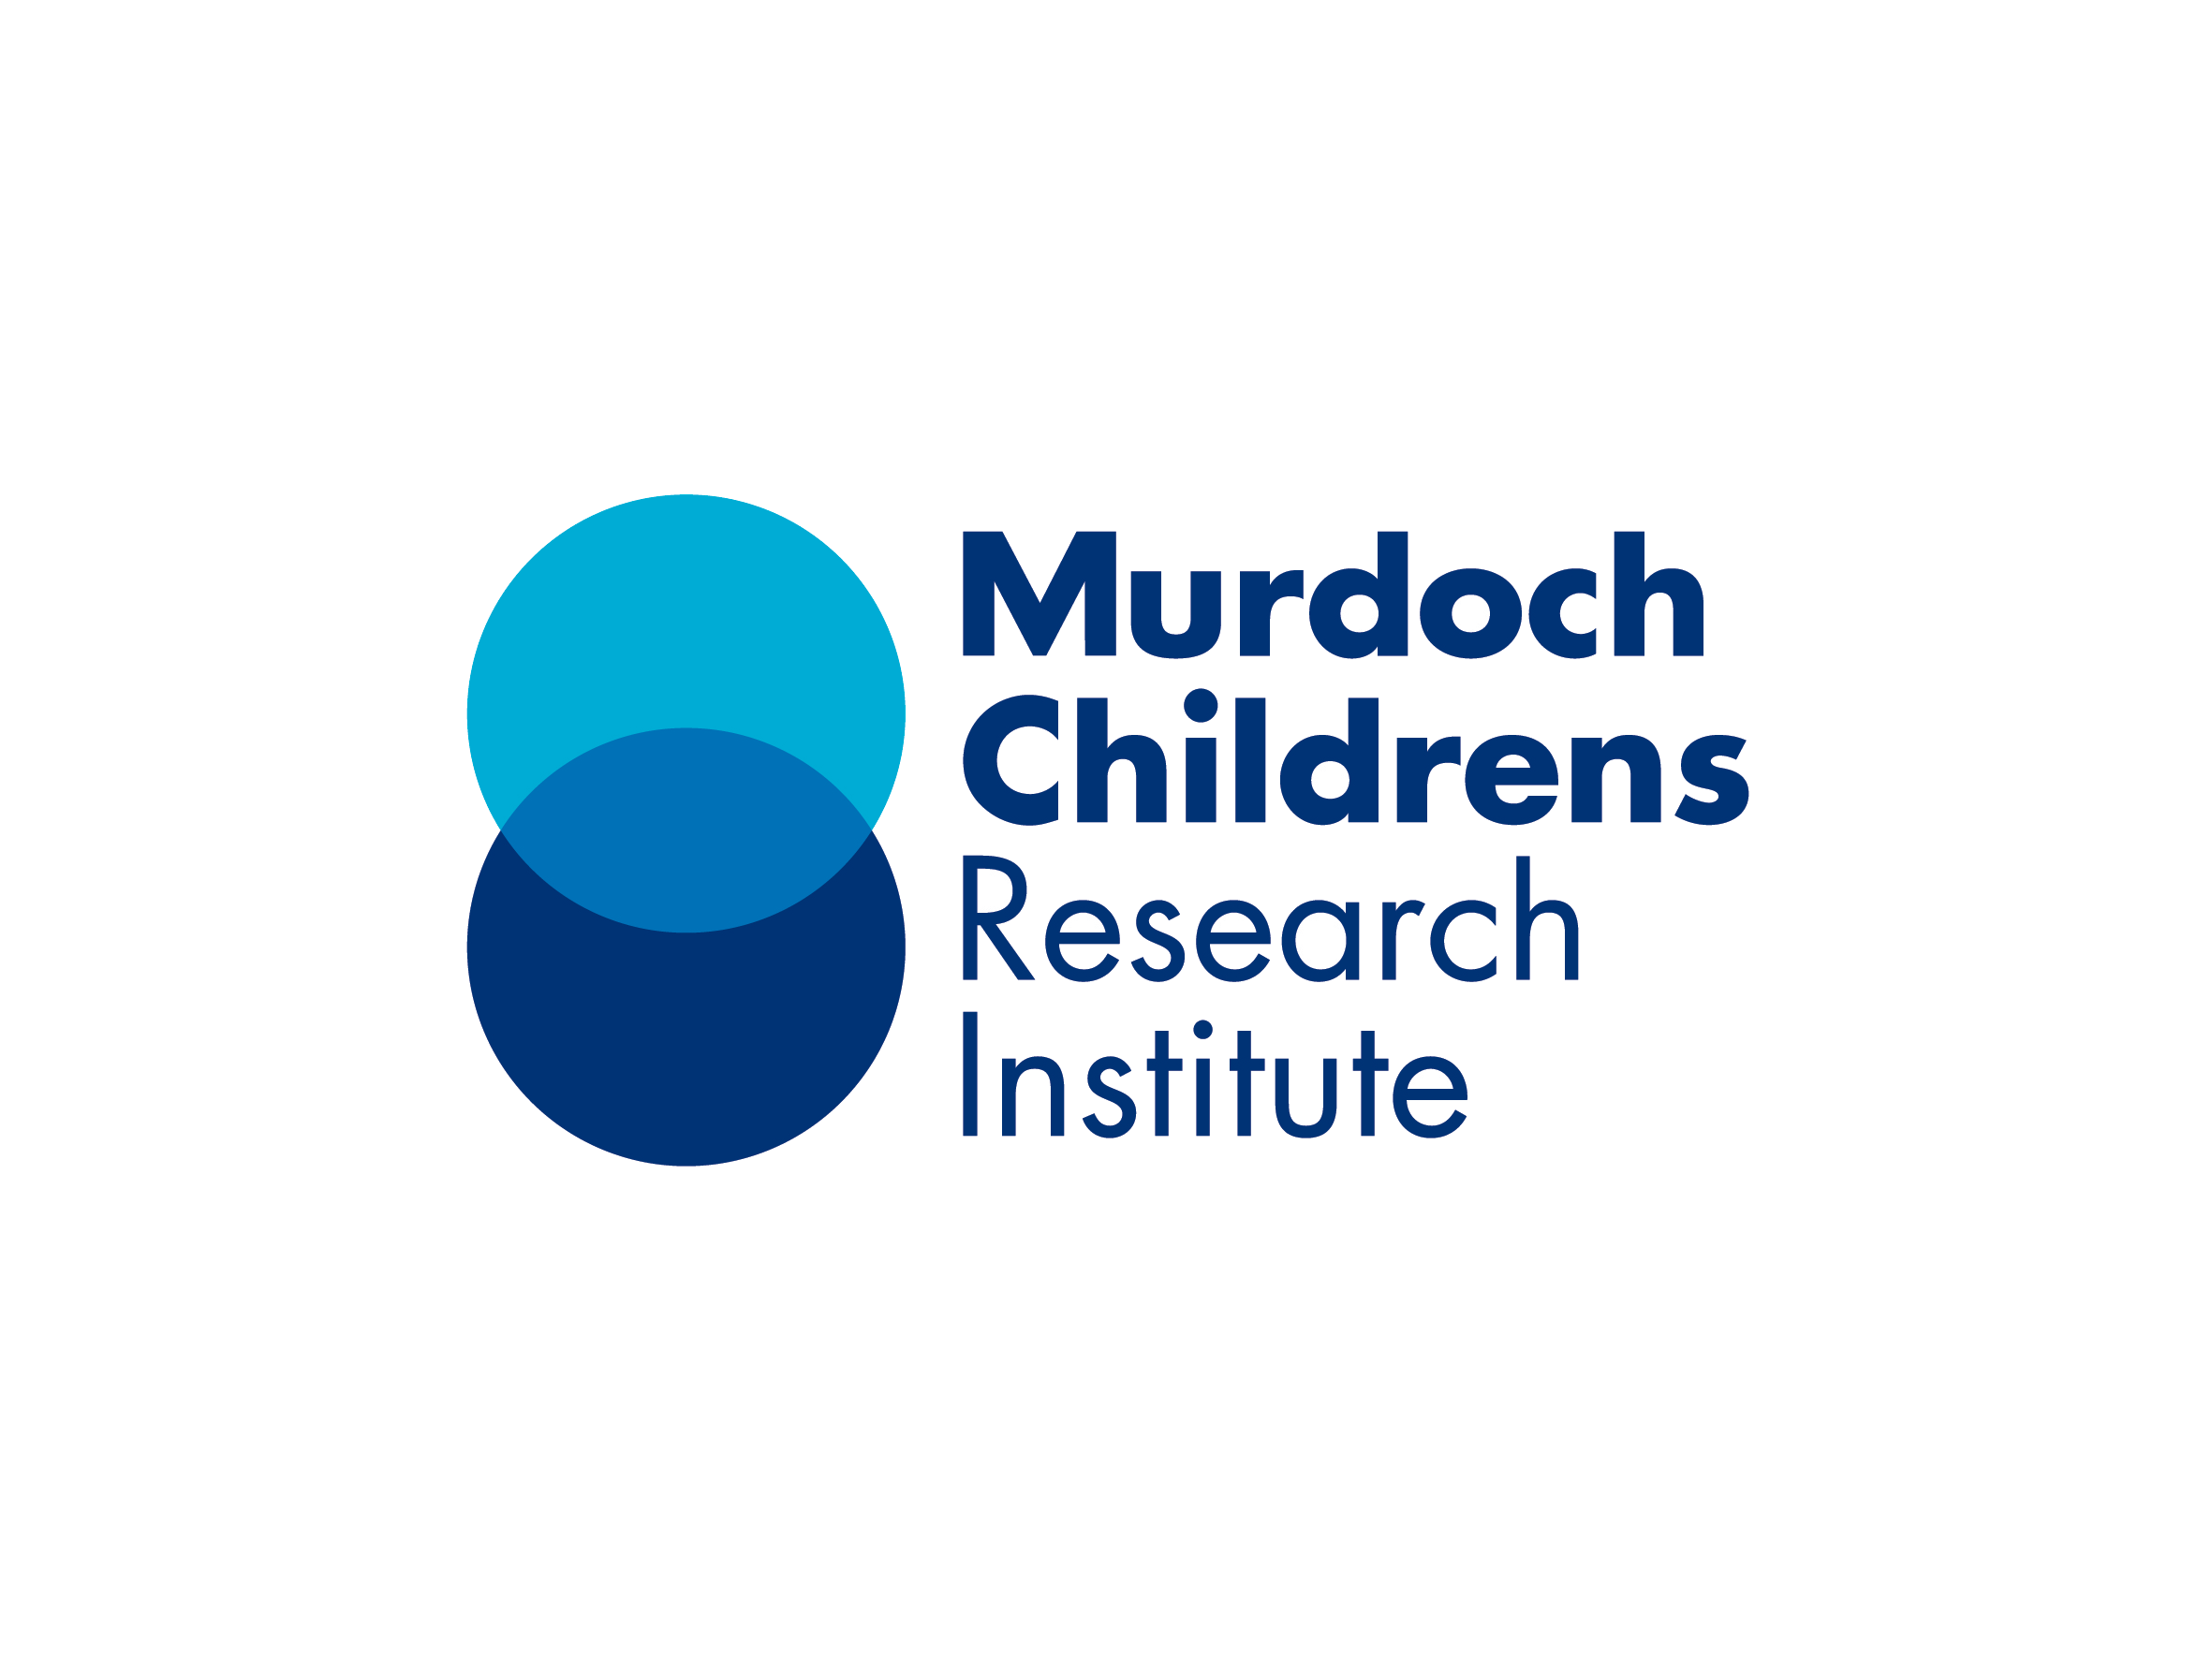 The Murdoch Children’s Research Institute 